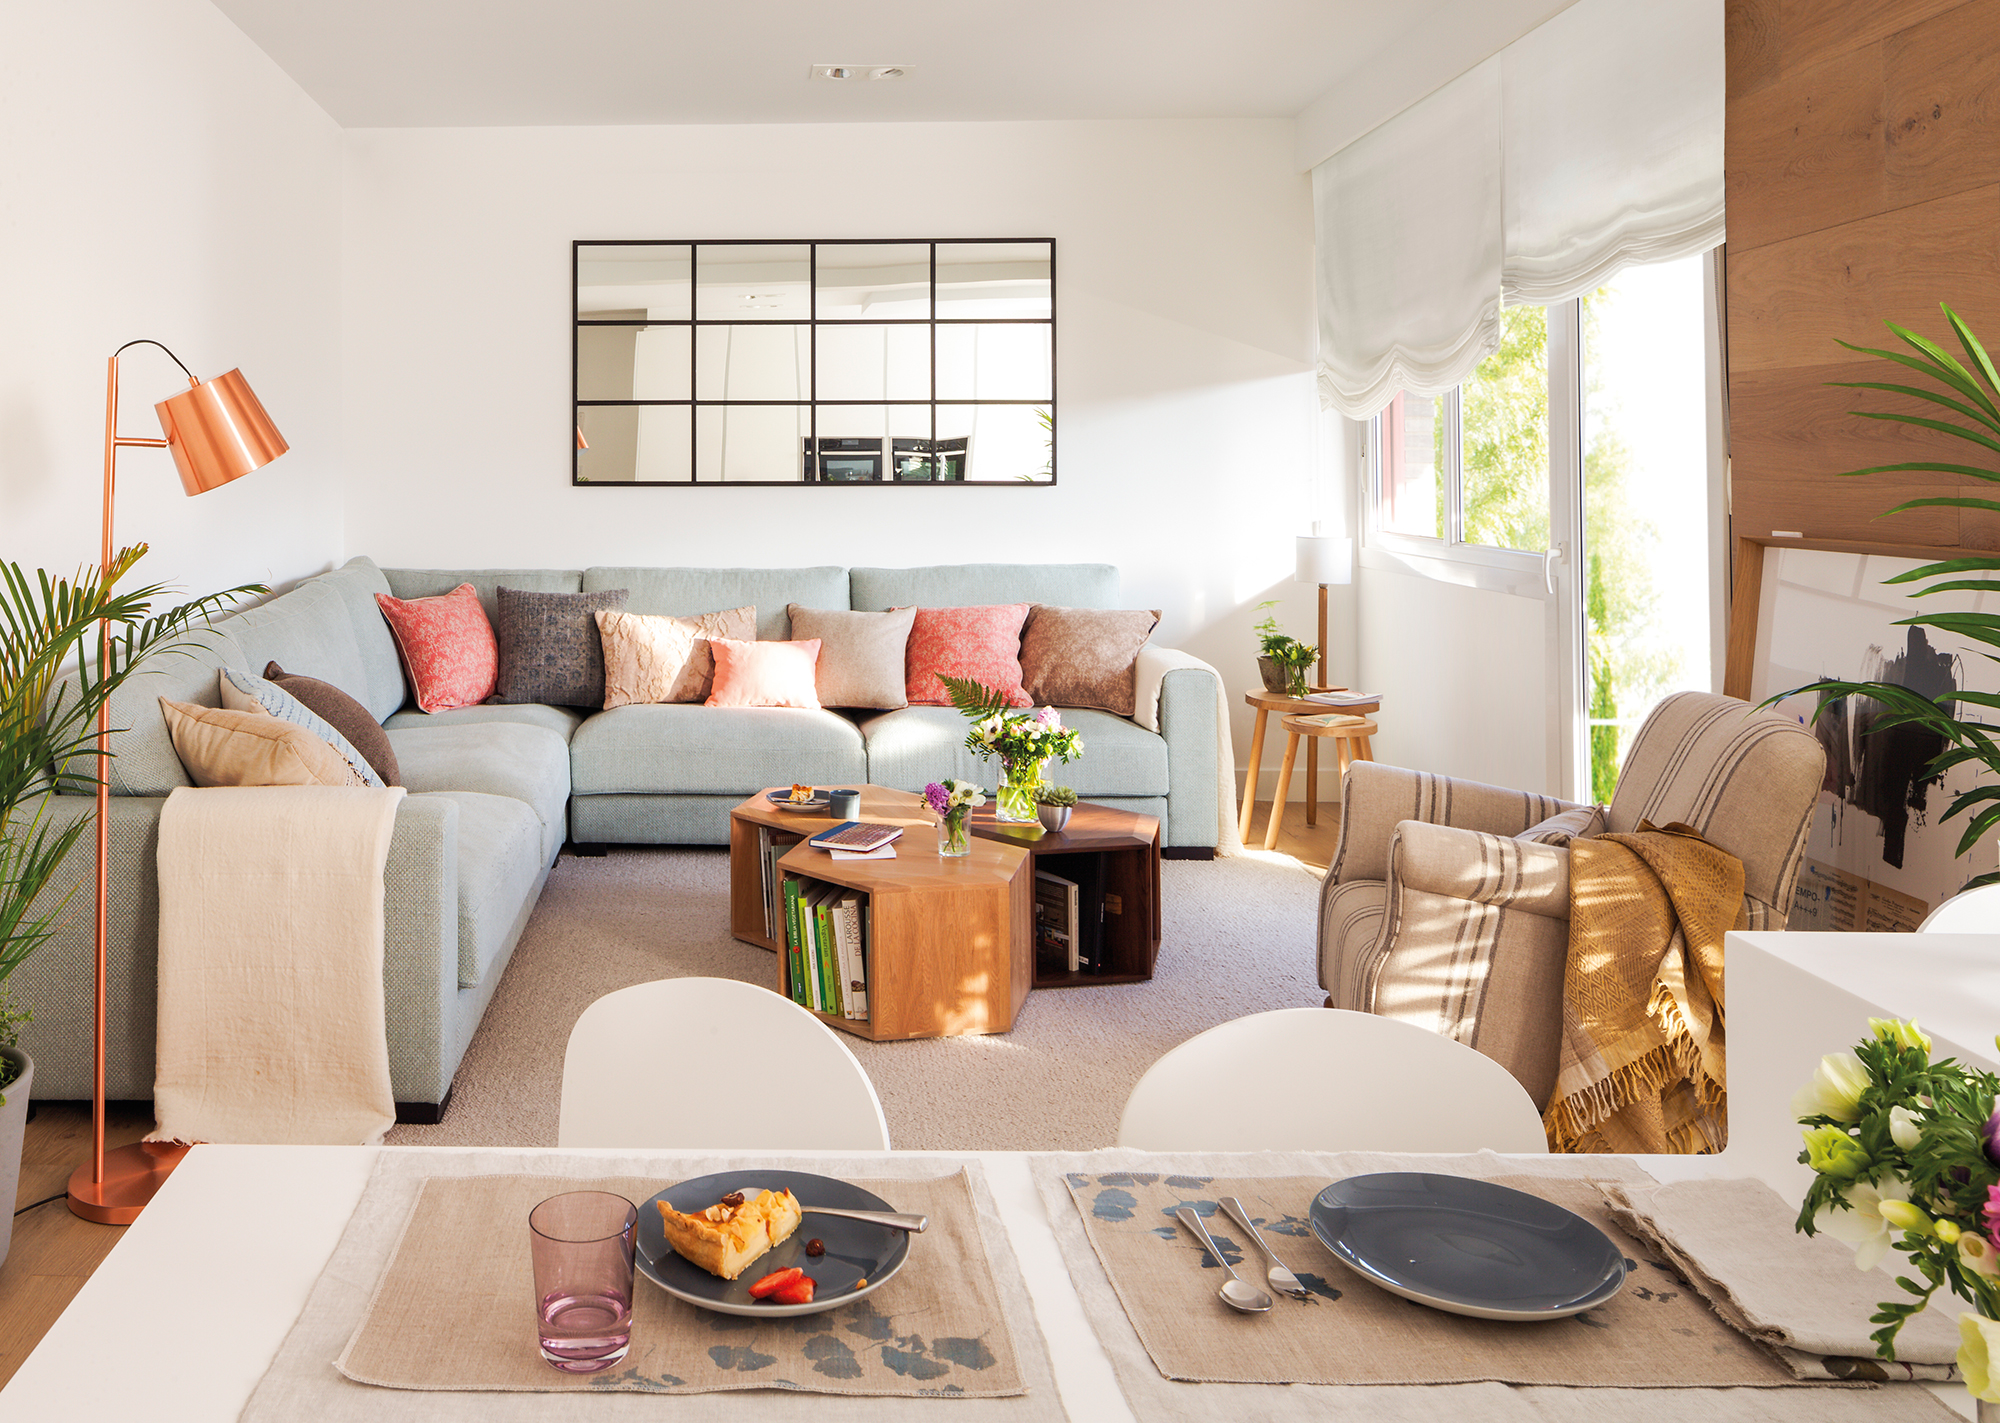 Salón moderno abierto al comedor con sofá esquinero gris, cojines rosas, espejo de cuarterones, mesa de centro de madera y alfombra beige de pelo.